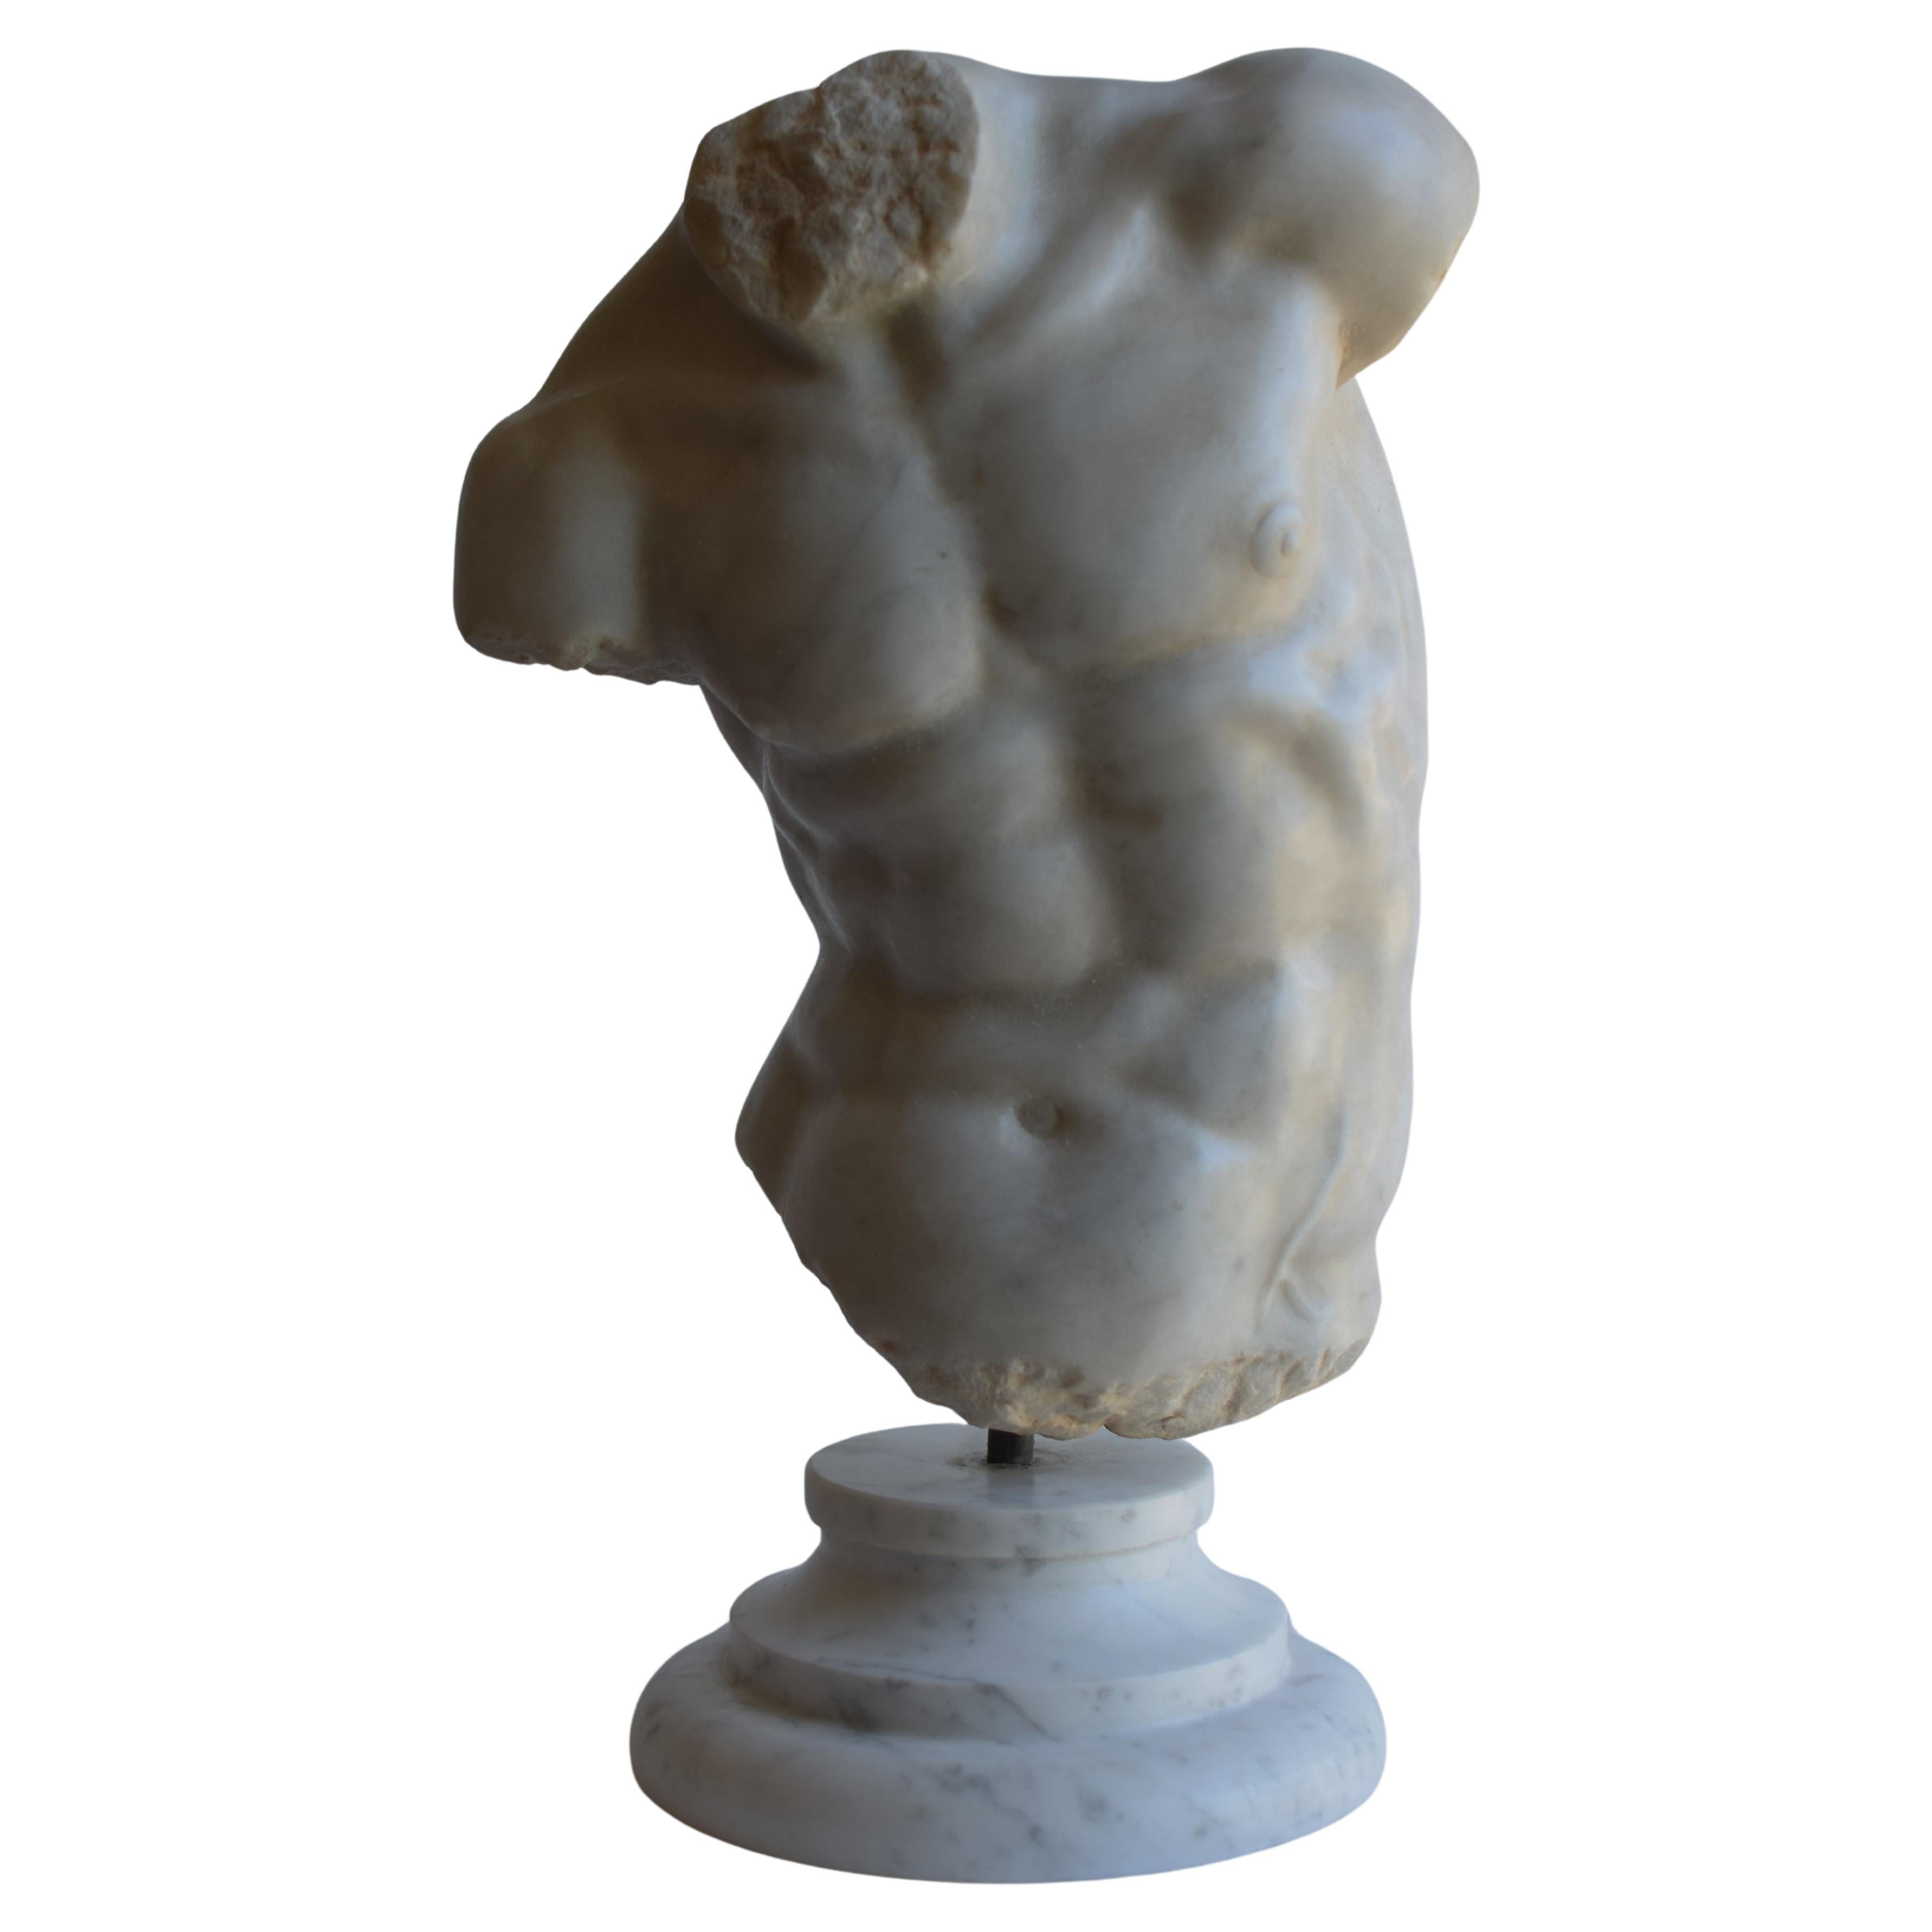 Männlicher Torso - "Torso Gaddi" auf weißem Carrara-Marmor gemeißelt